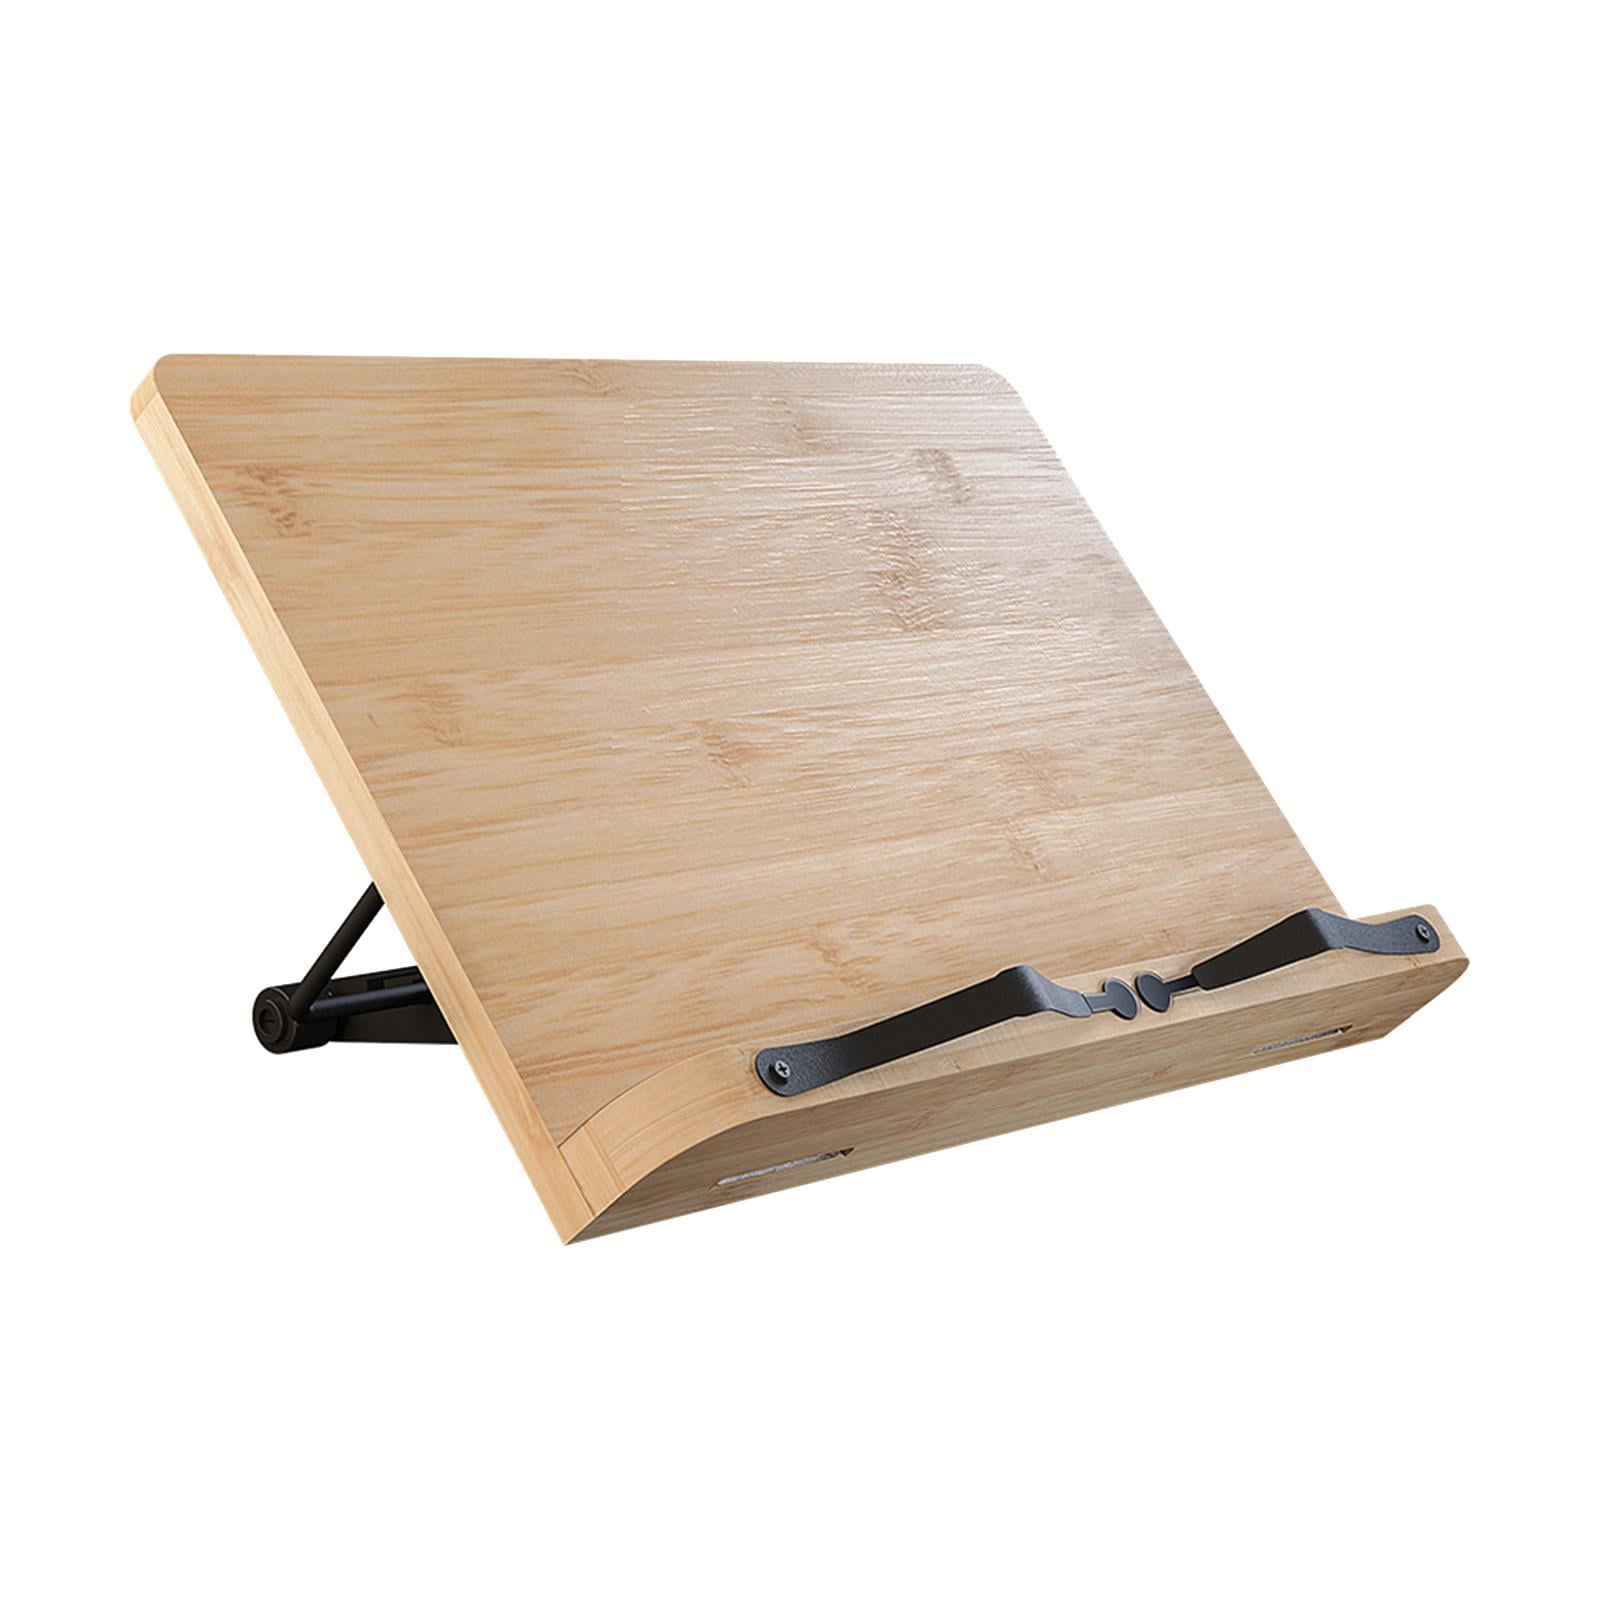 TILISMA Handmade Wooden Book Stand - Cookbook & Tablet Holder - TILISMA